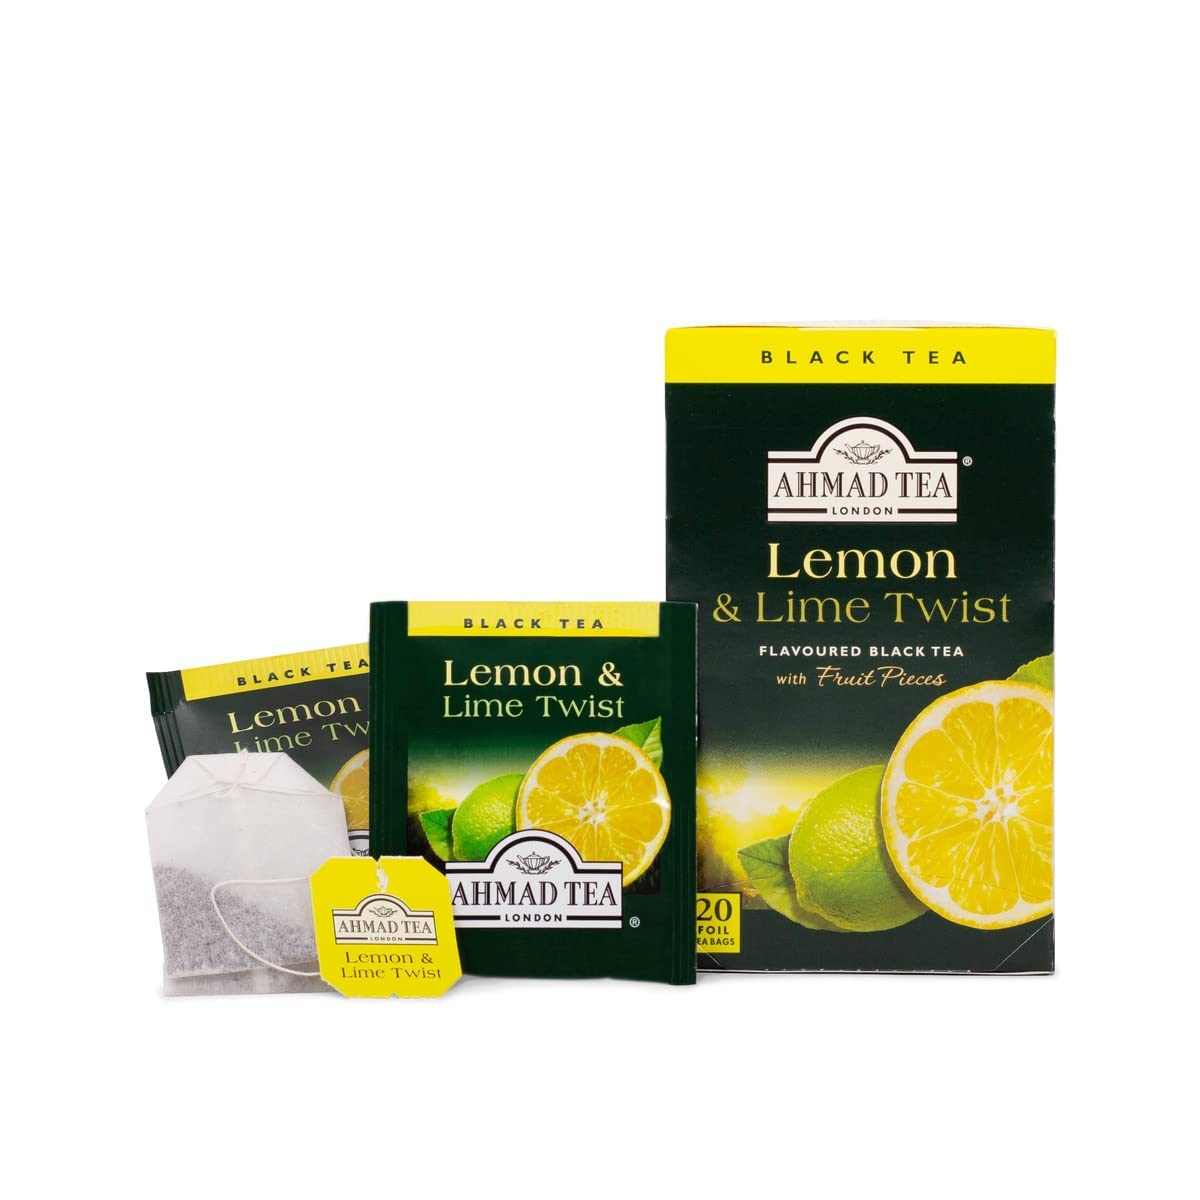 Ahmad Tea Lemon & Lime Twist Black